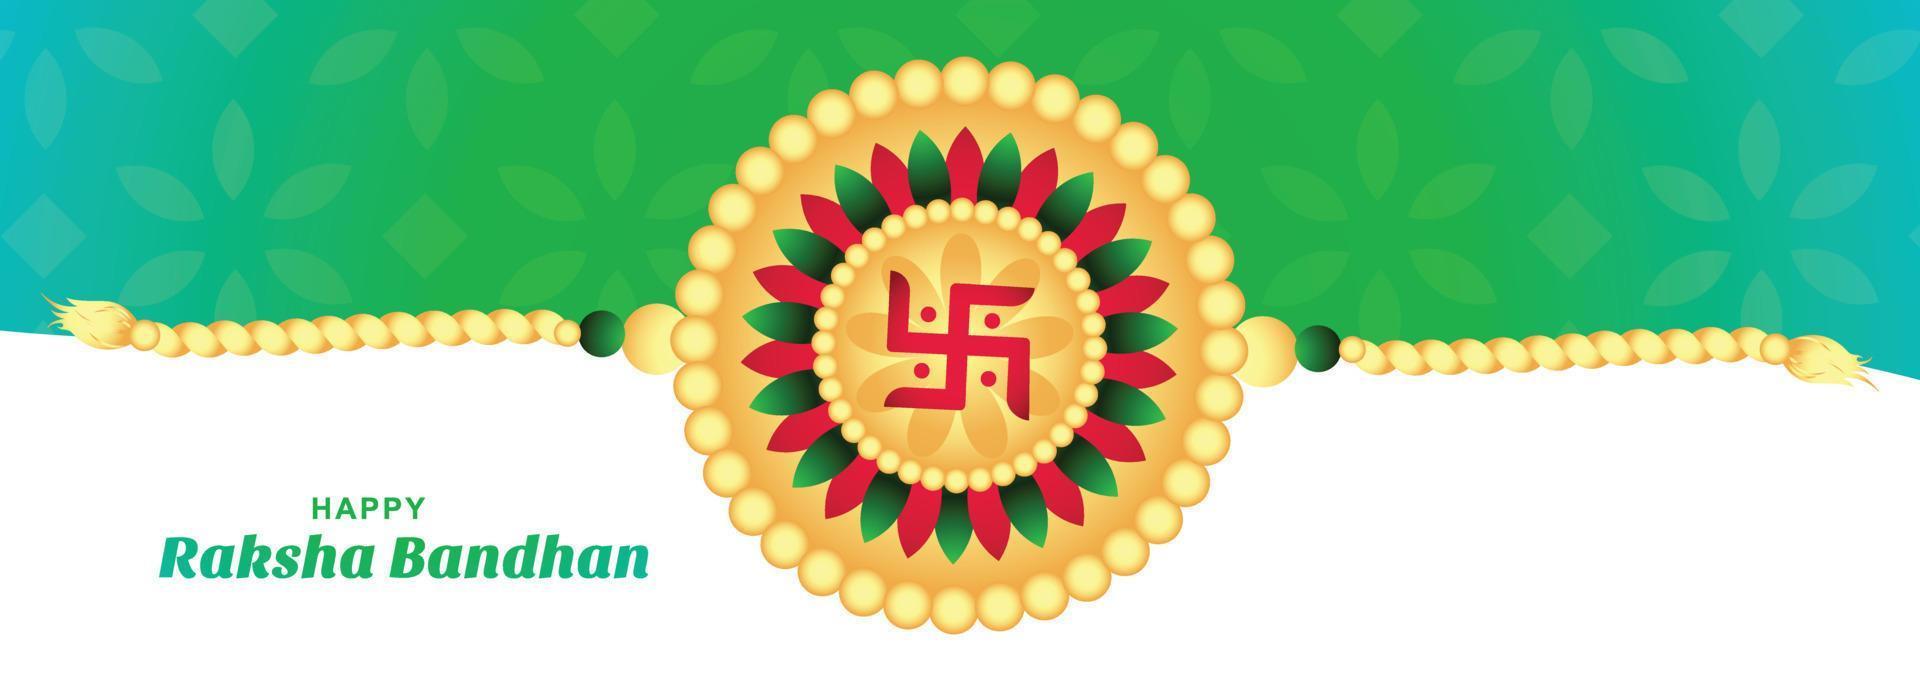 feliz raksha bandhan no design de banner de cartão decorativo rakhi festival vetor